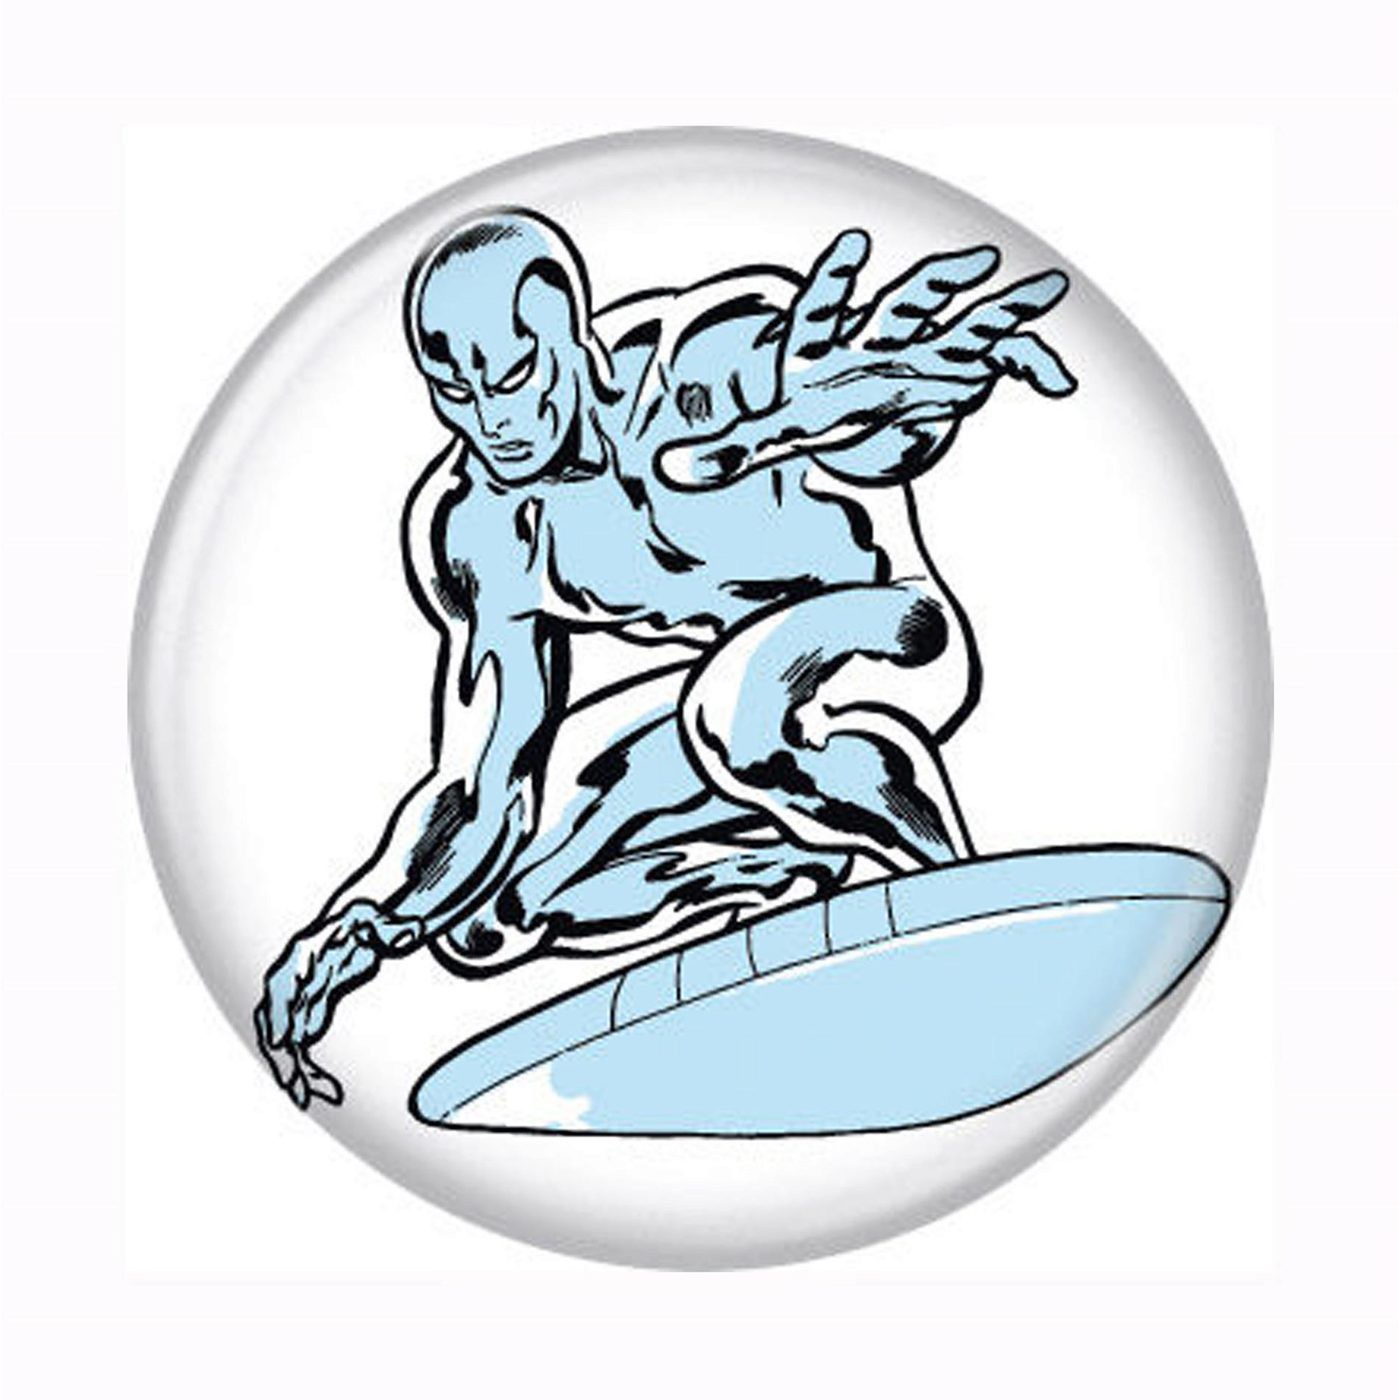 Silver Surfer White Button